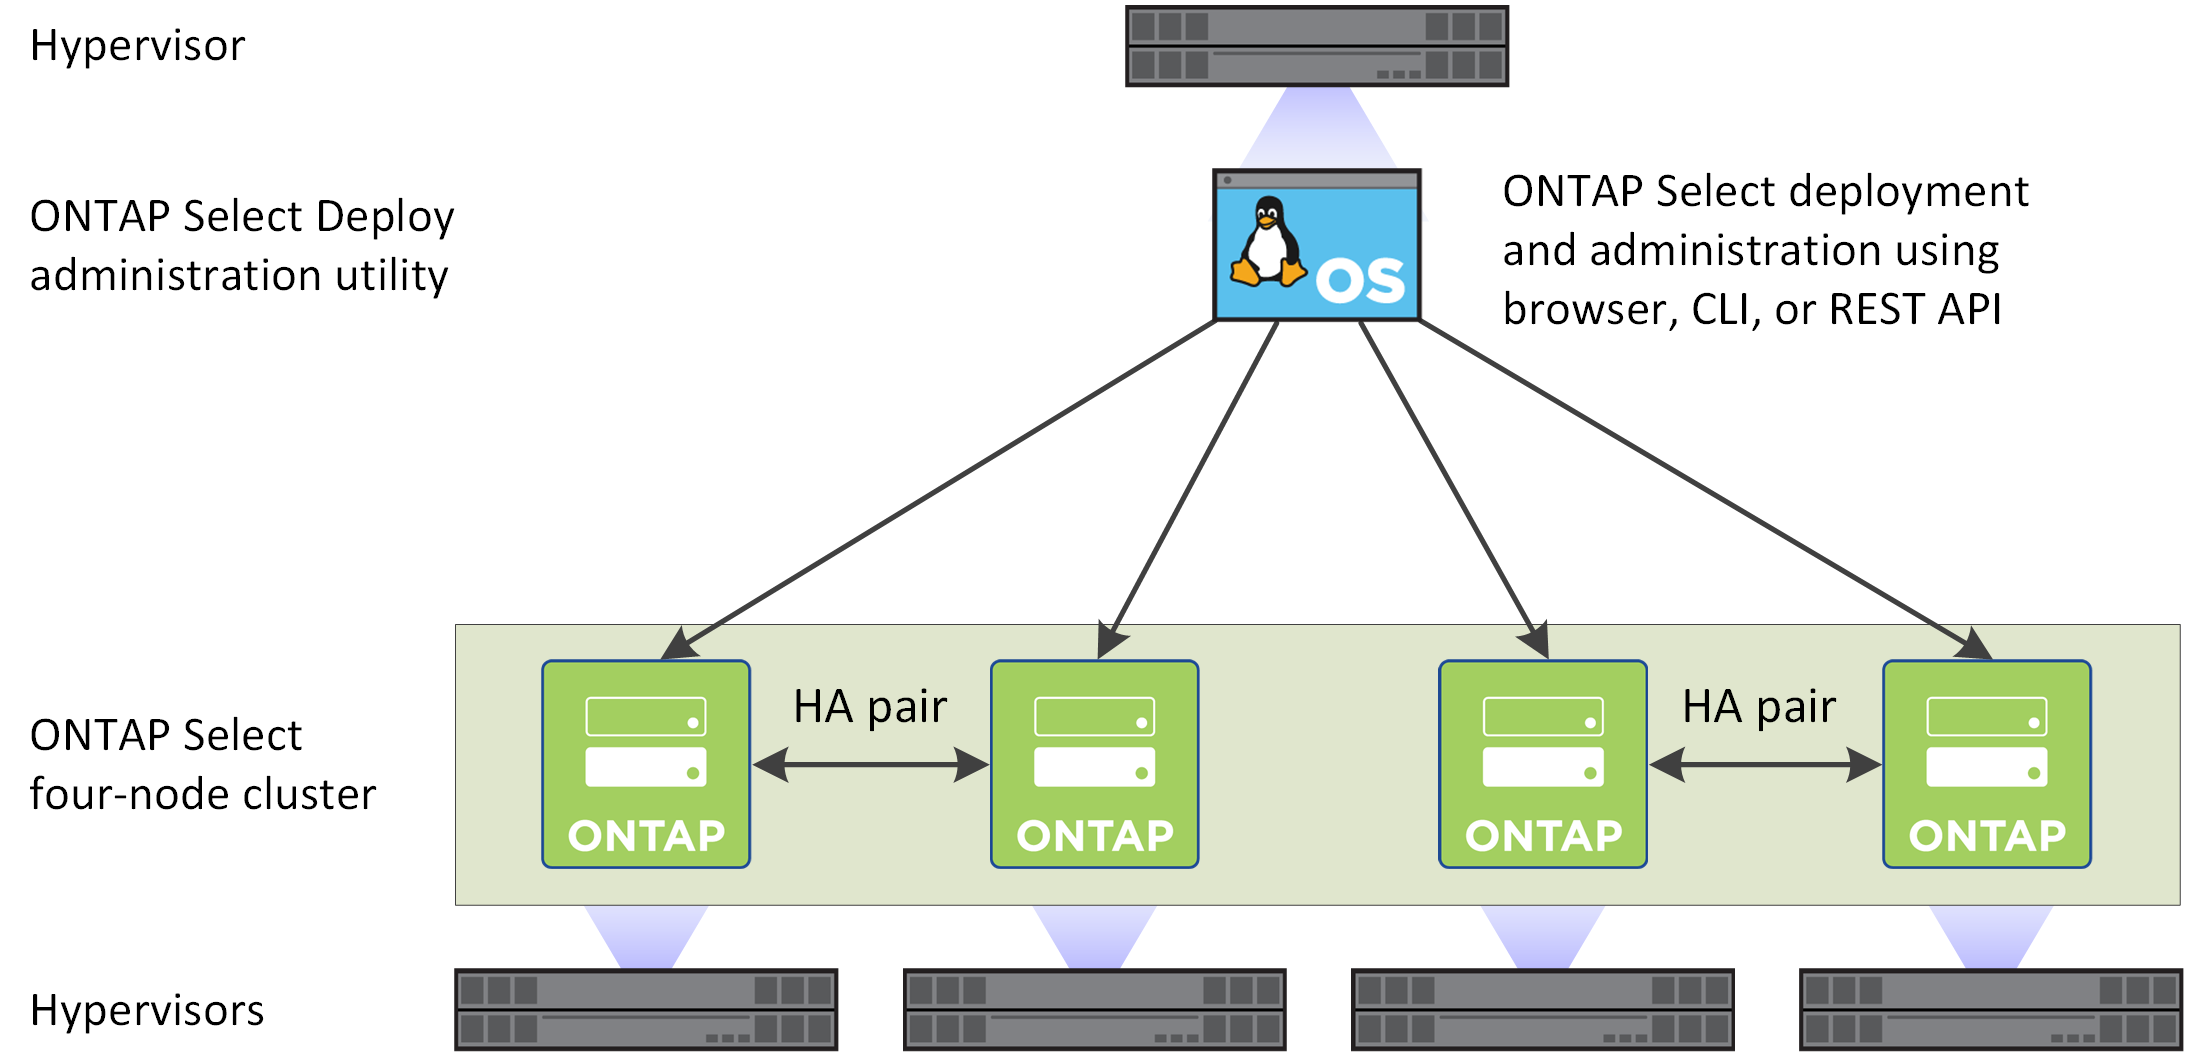 에서는 Deploy 관리 유틸리티를 사용하여 생성된 ONTAP Select 4노드 클러스터를 보여 줍니다.